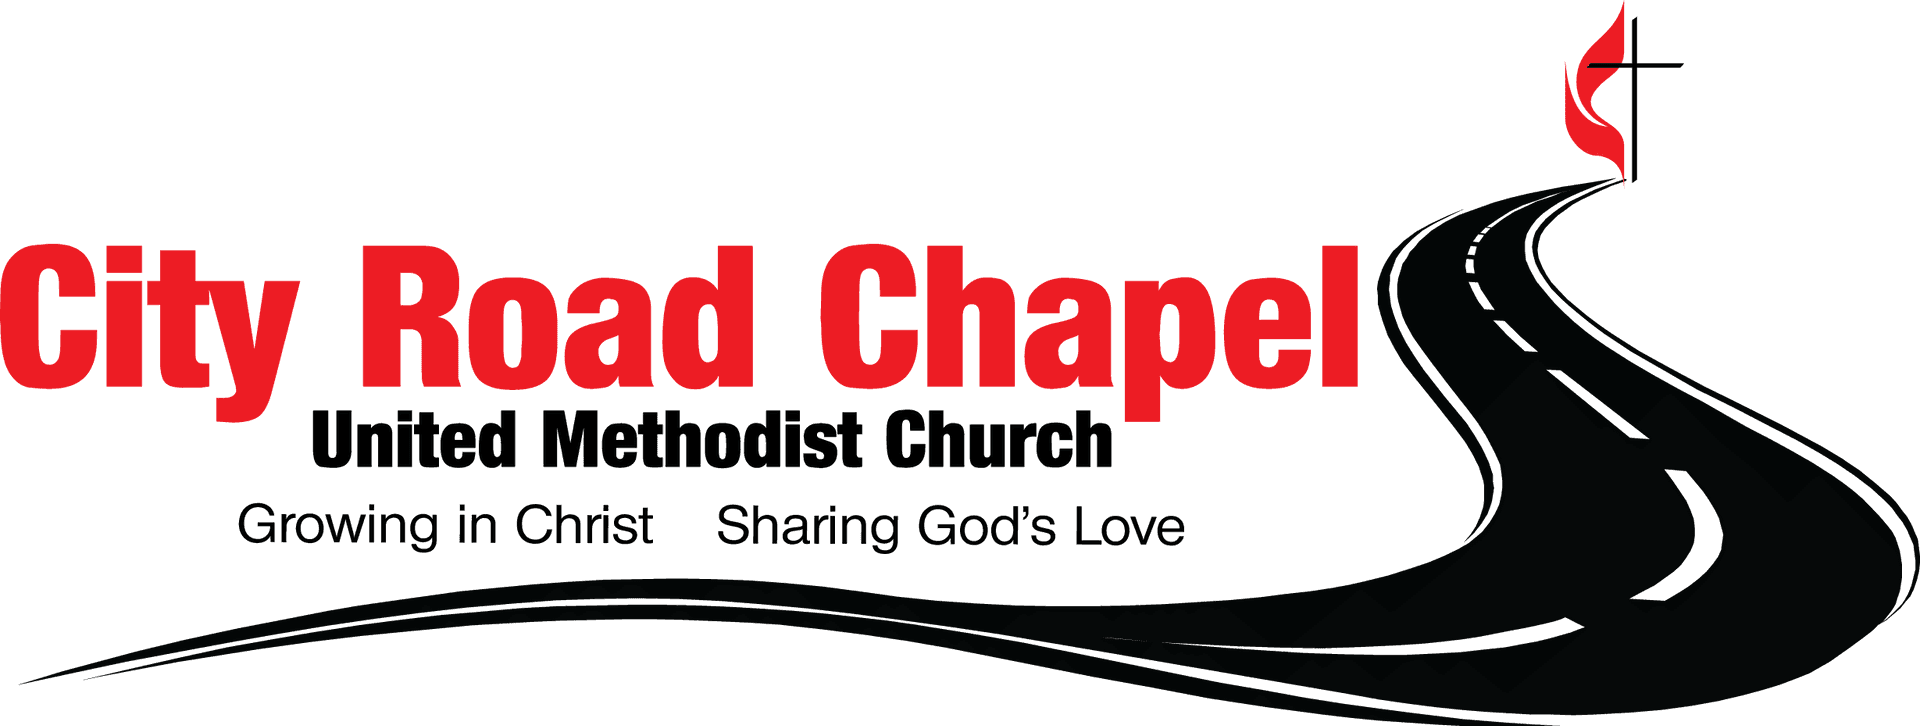 City Road Chapel Logo PNG